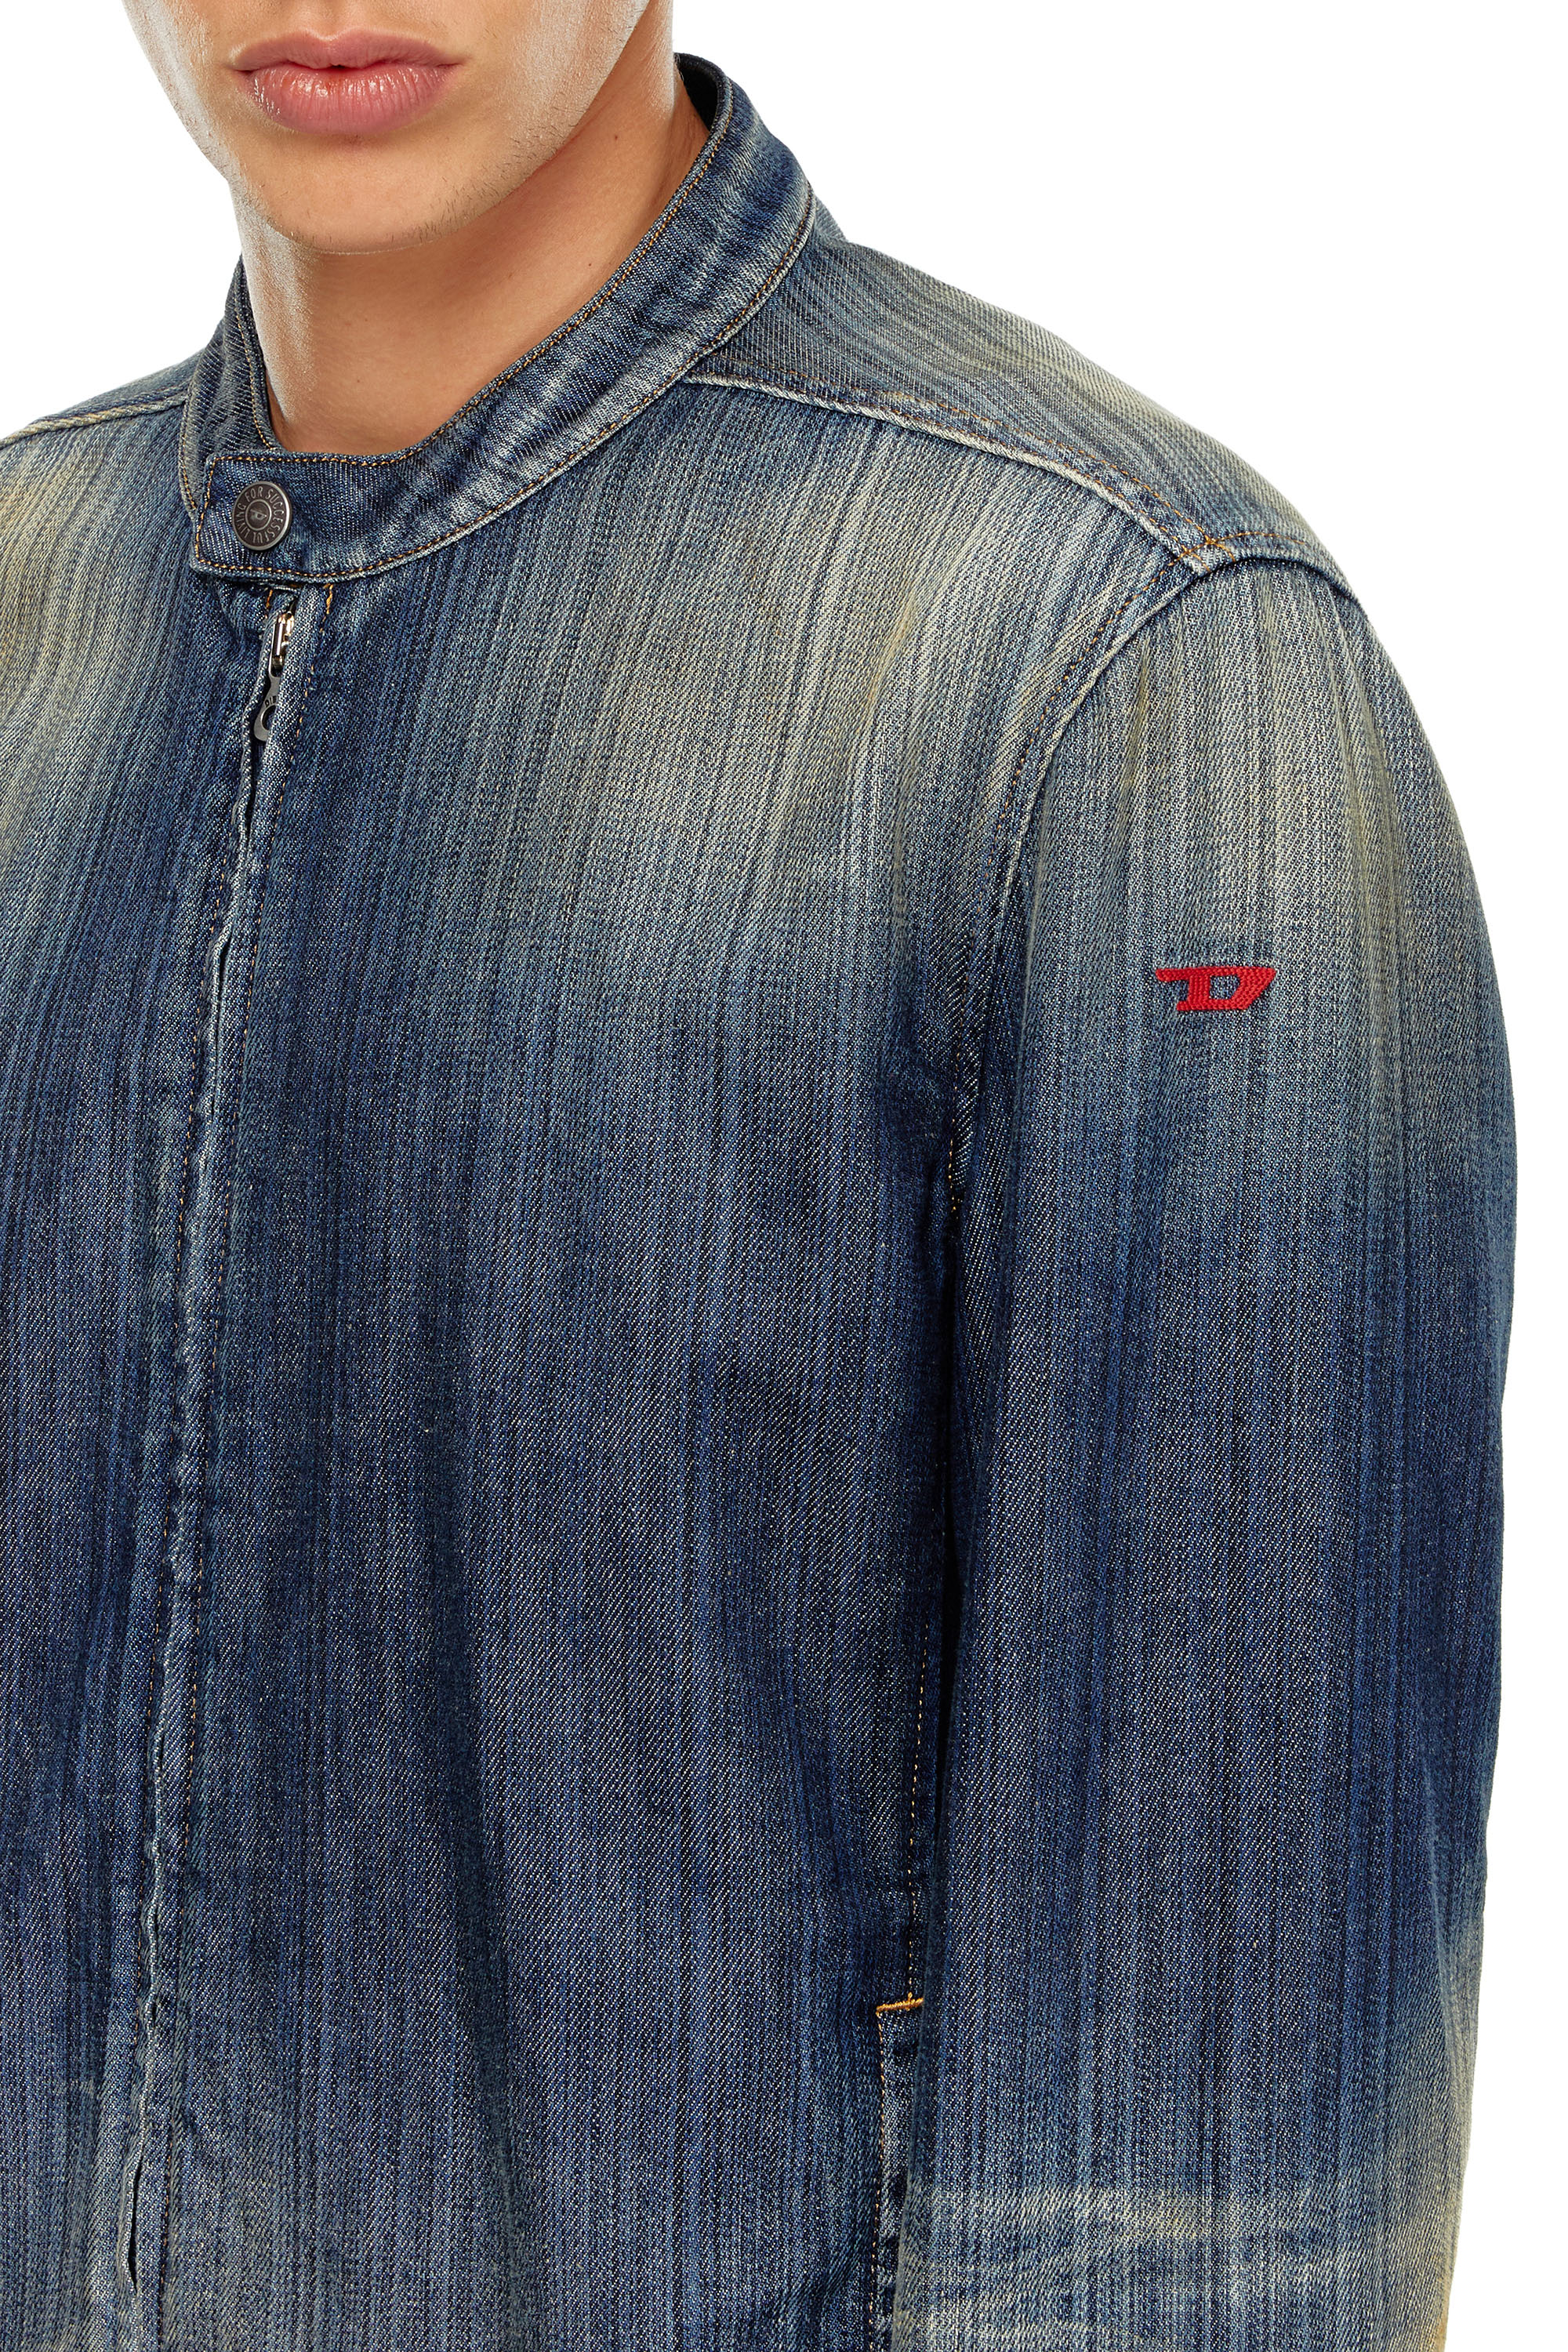 Diesel - D-GLORY, Male Moto jacket in streaky denim in ブルー - Image 5